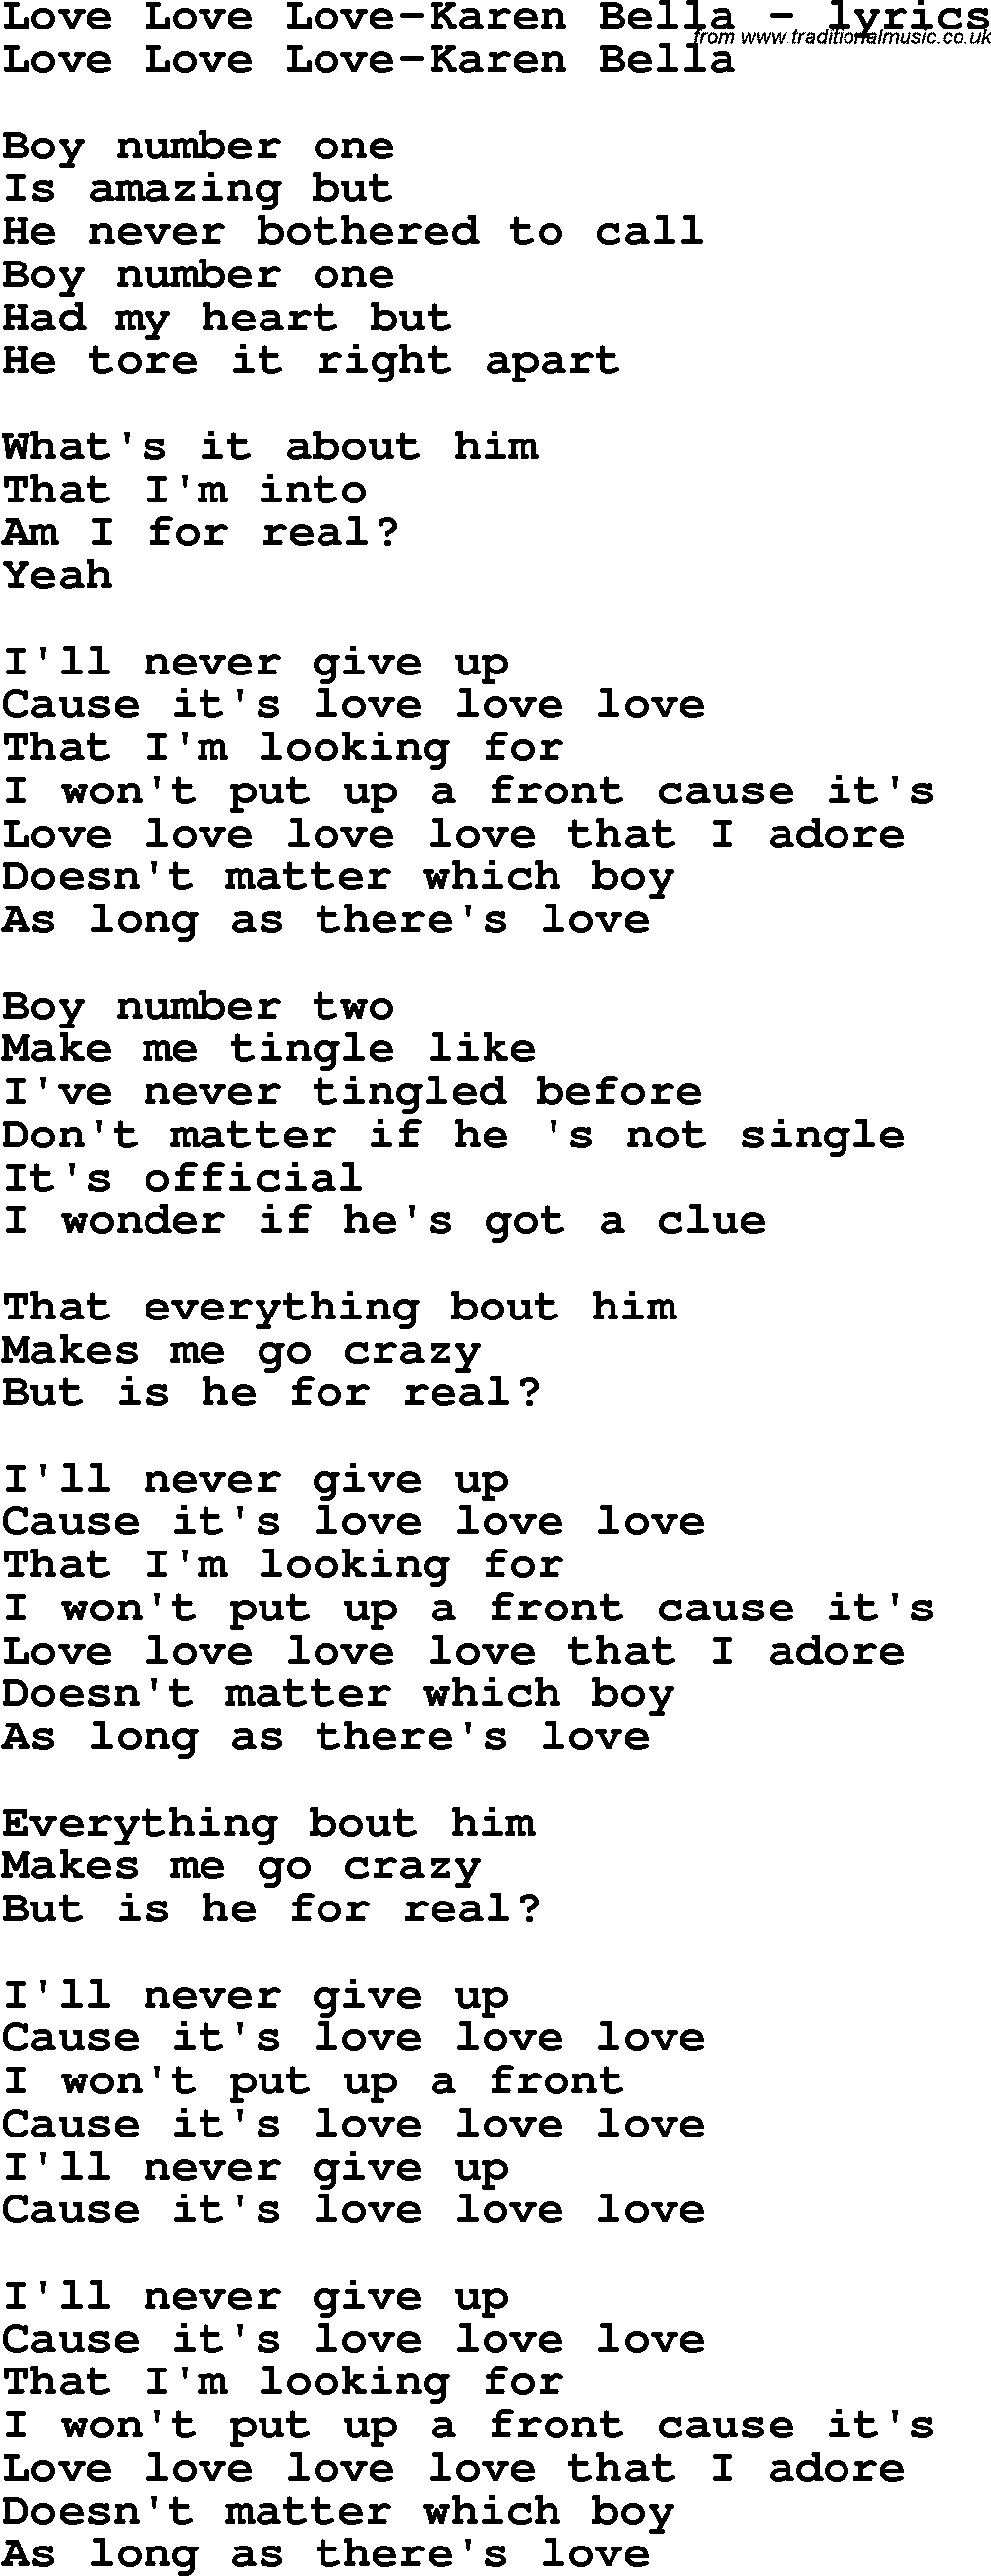 Love Song Lyrics for: Love Love Love-Karen Bella